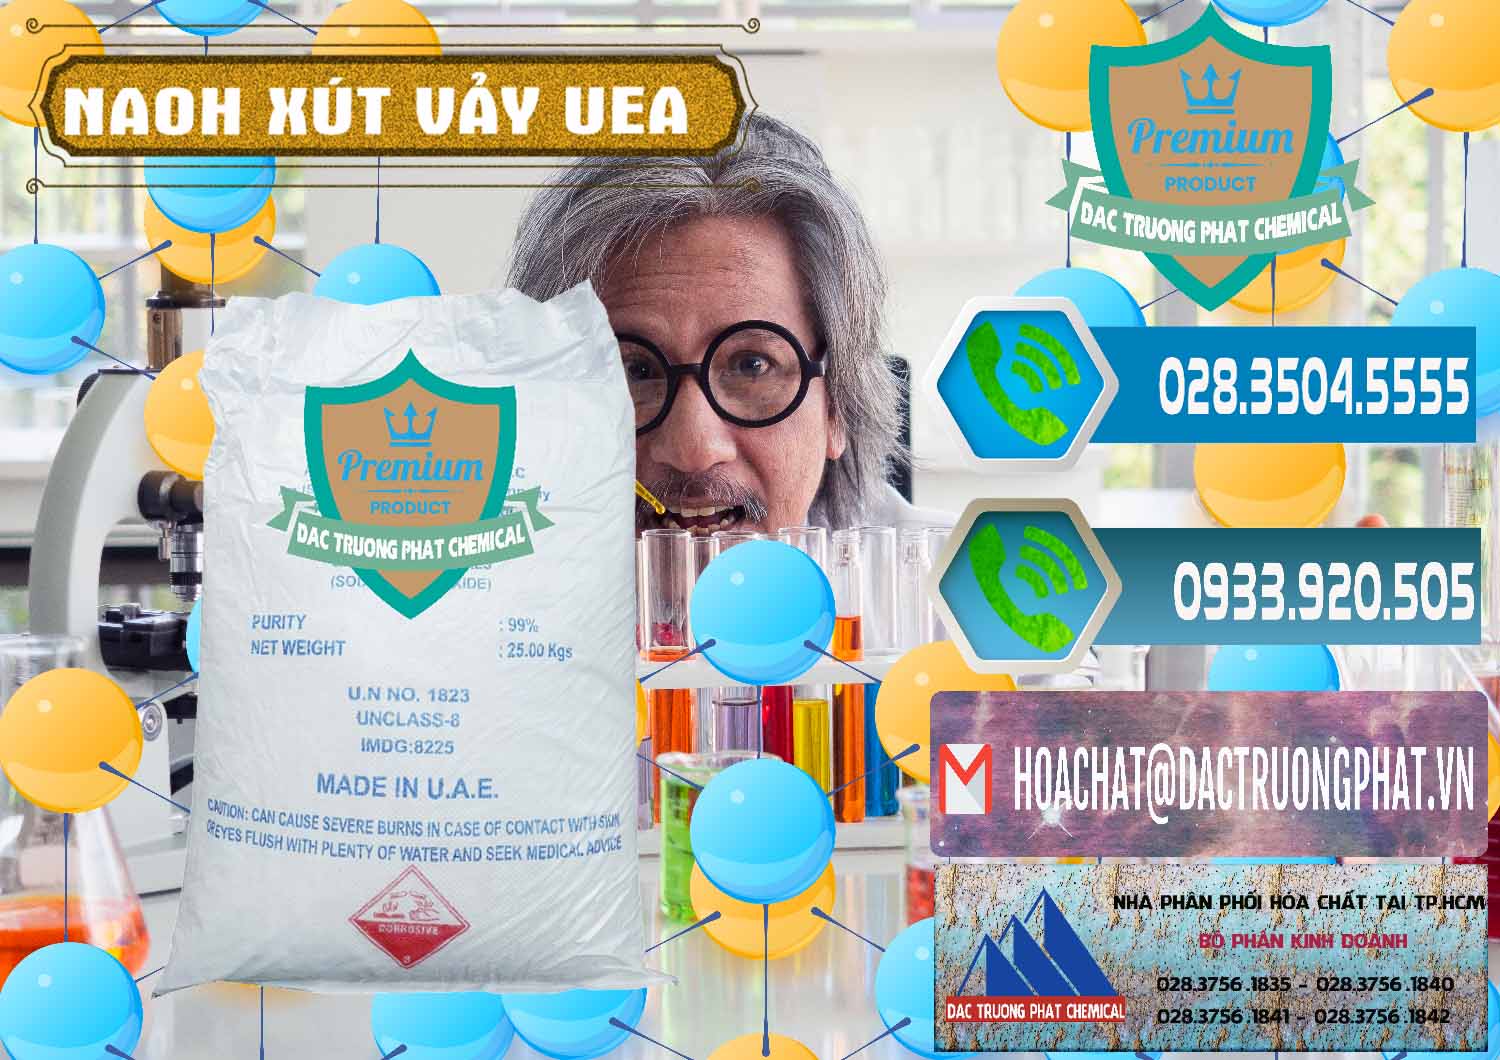 Chuyên cung cấp và bán Xút Vảy - NaOH Vảy UAE Iran - 0432 - Nơi nhập khẩu - phân phối hóa chất tại TP.HCM - congtyhoachat.net